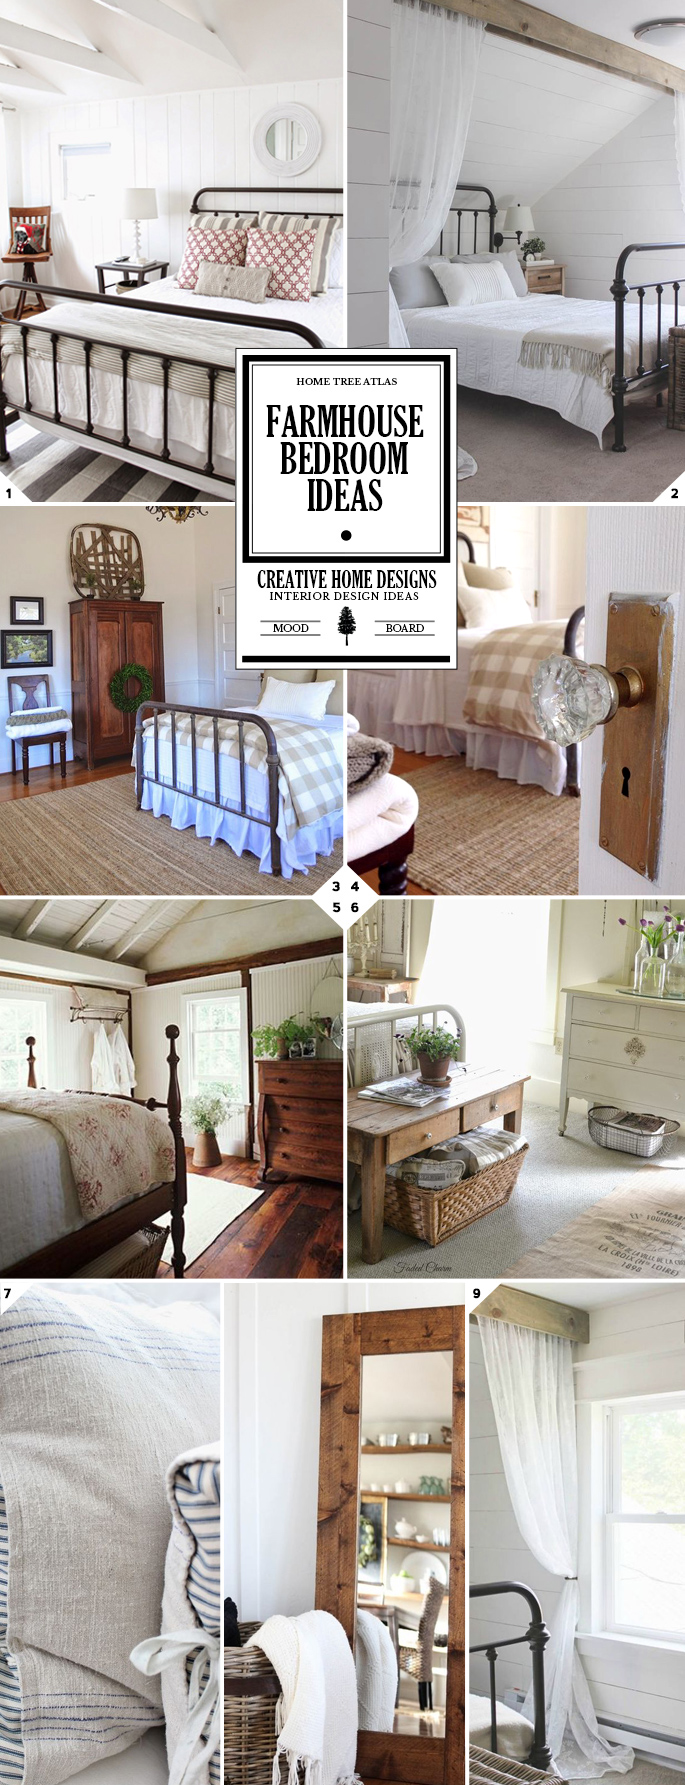 Farmhouse bedroom decor and furniture ideas